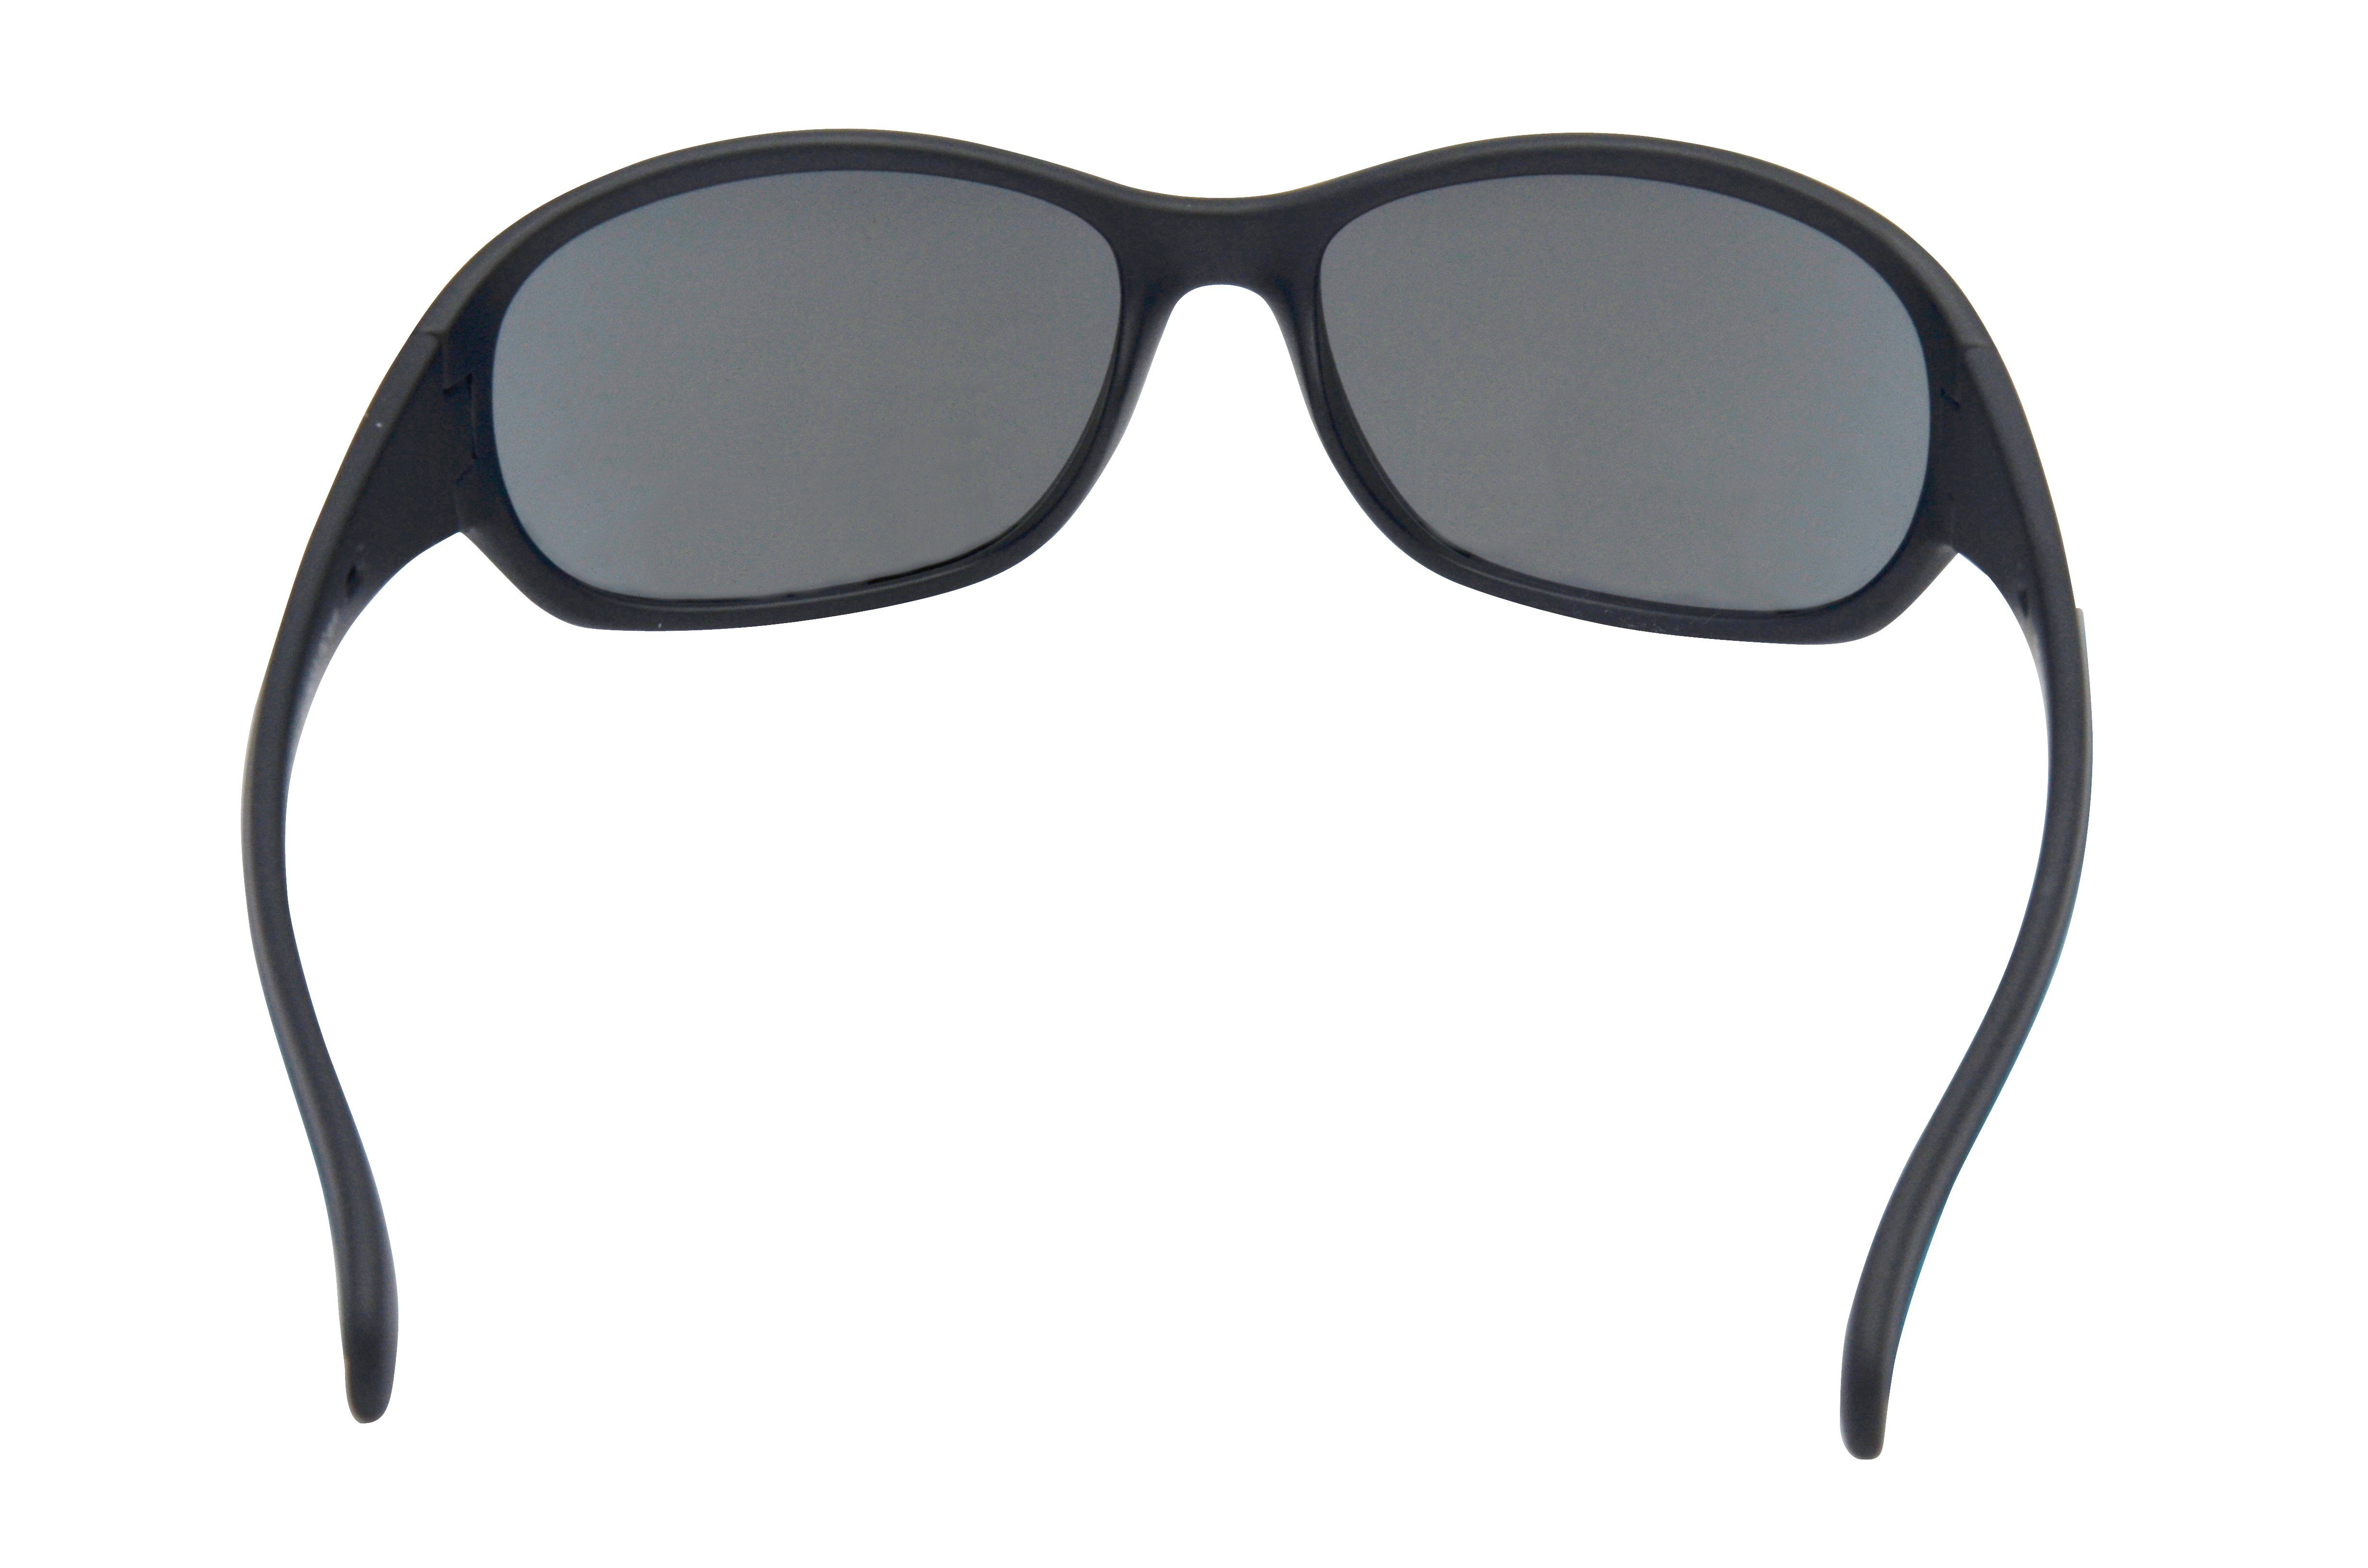 schwarz-pink, schwarz-blau Sportbrille Sonnenbrille Skibrille Damenbrille Damenmodell braun-grün, schmal Fahrradbrille, WS2424 geschnittenes Gamswild